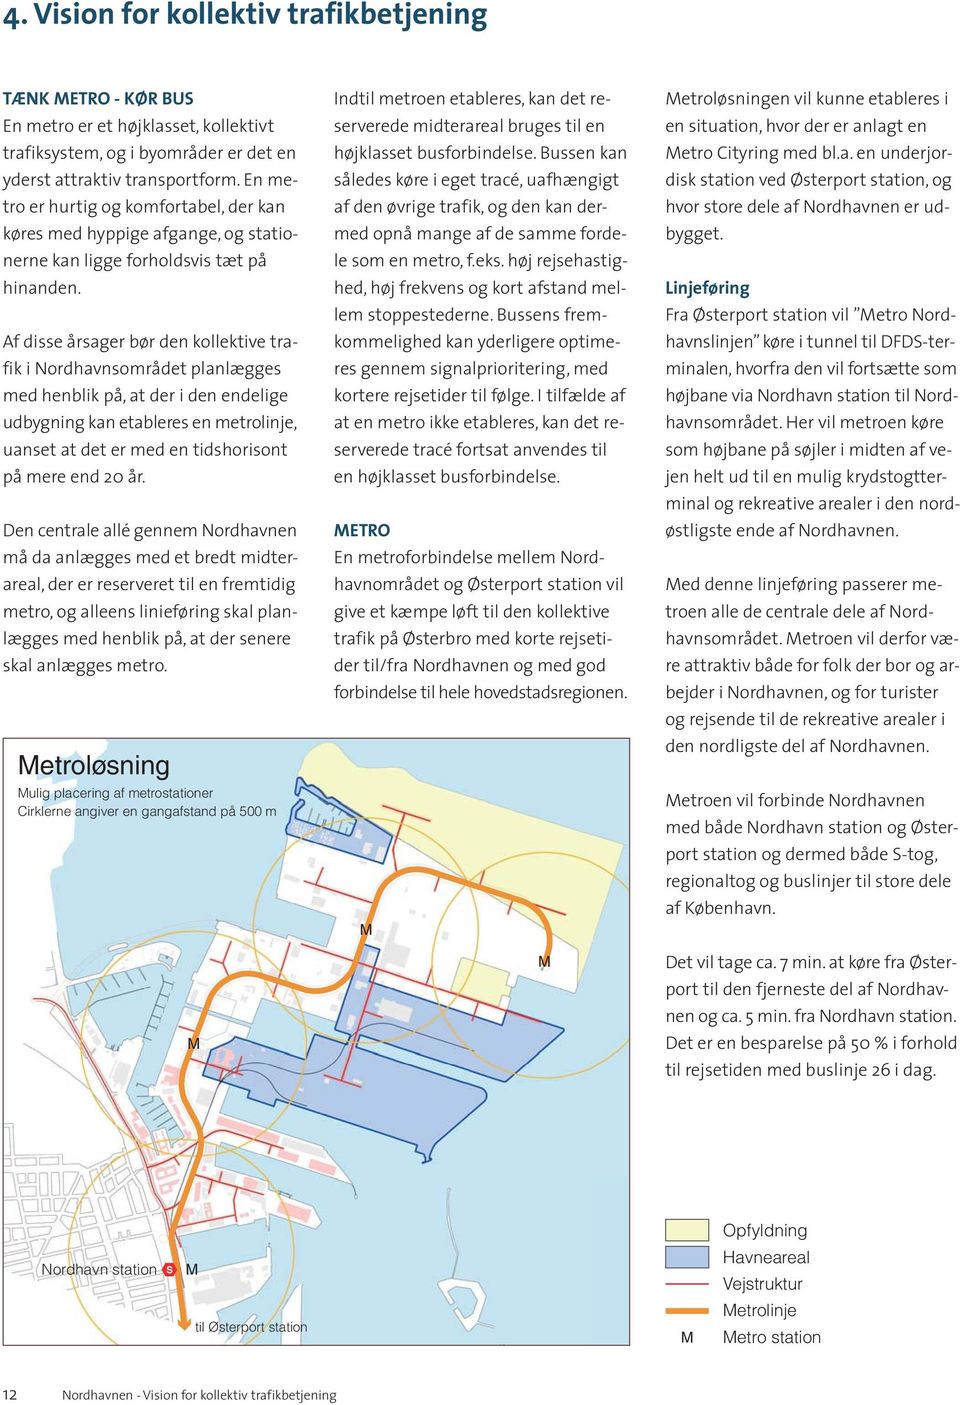 Af disse årsager bør den kollektive trafik i Nordhavnsområdet planlægges med henblik på, at der i den endelige udbygning kan etableres en metrolinje, uanset at det er med en tidshorisont på mere end